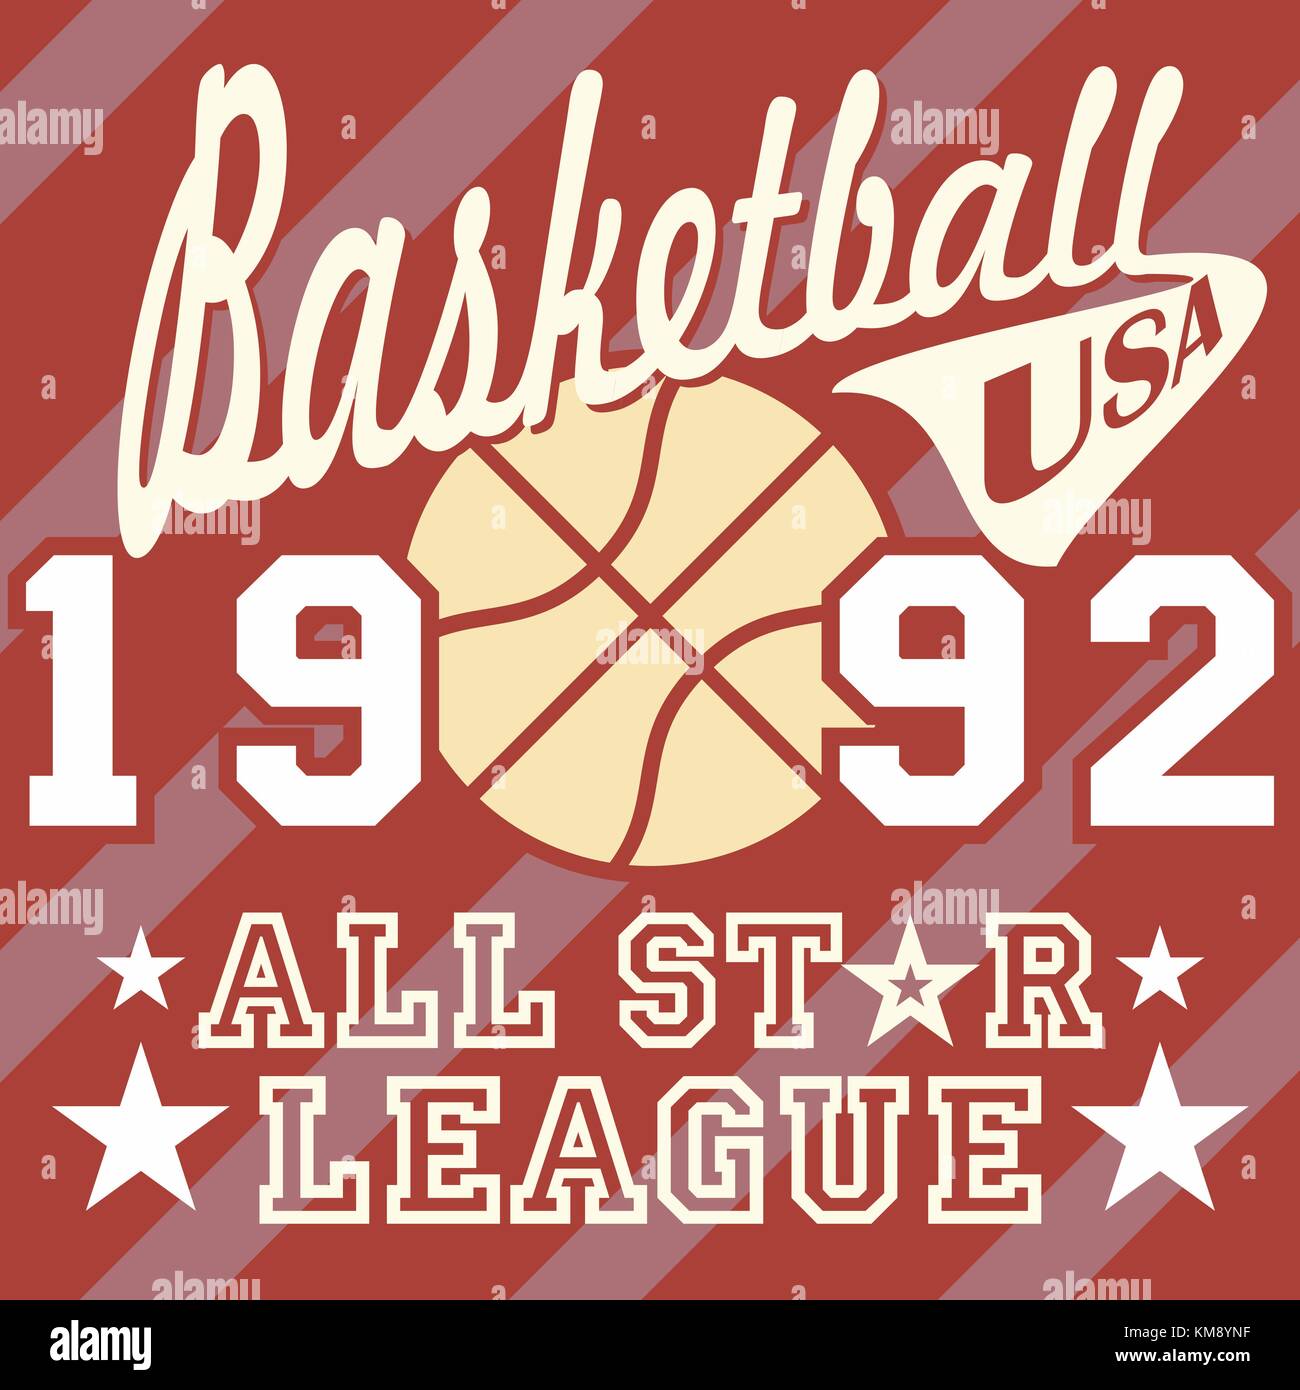 Basketball Emblem Label Print Tshirt Design Vector Illustration